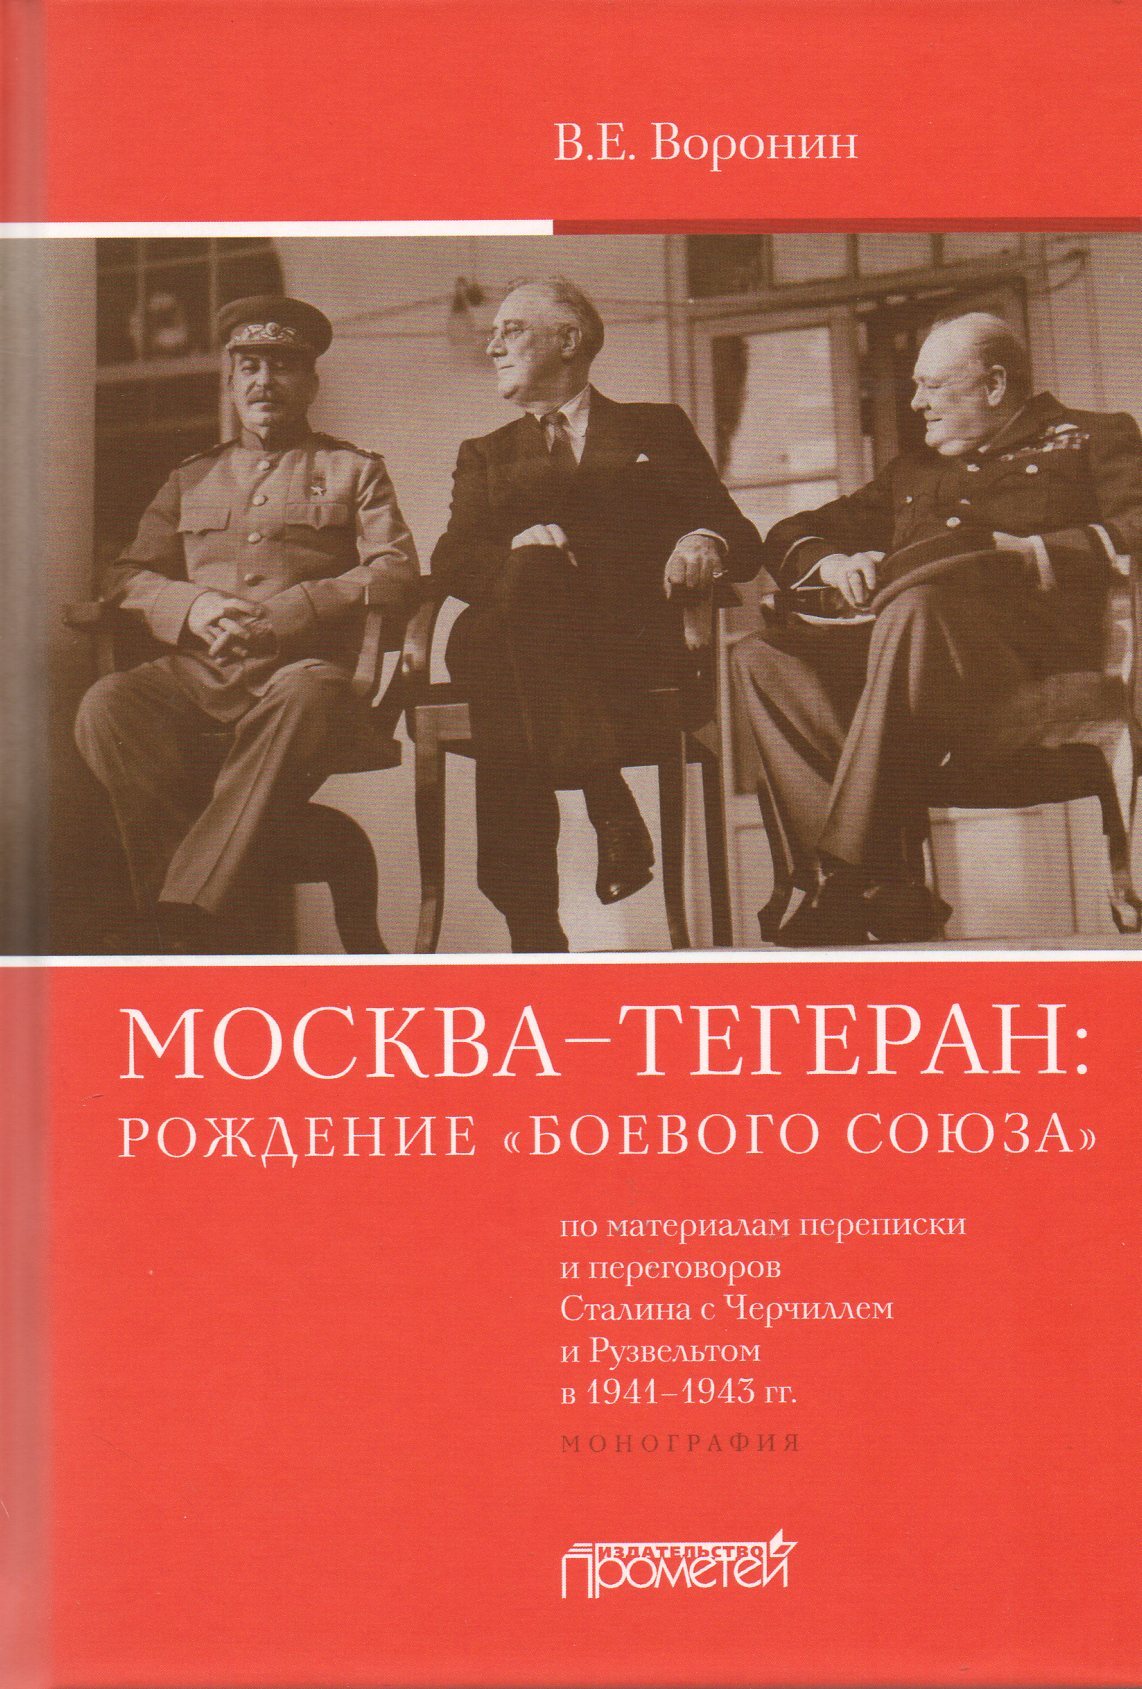 Сталин разговаривает по телефону с черчиллем нет. Тегеран 1943 книга. Разговор Сталина с Черчиллем.